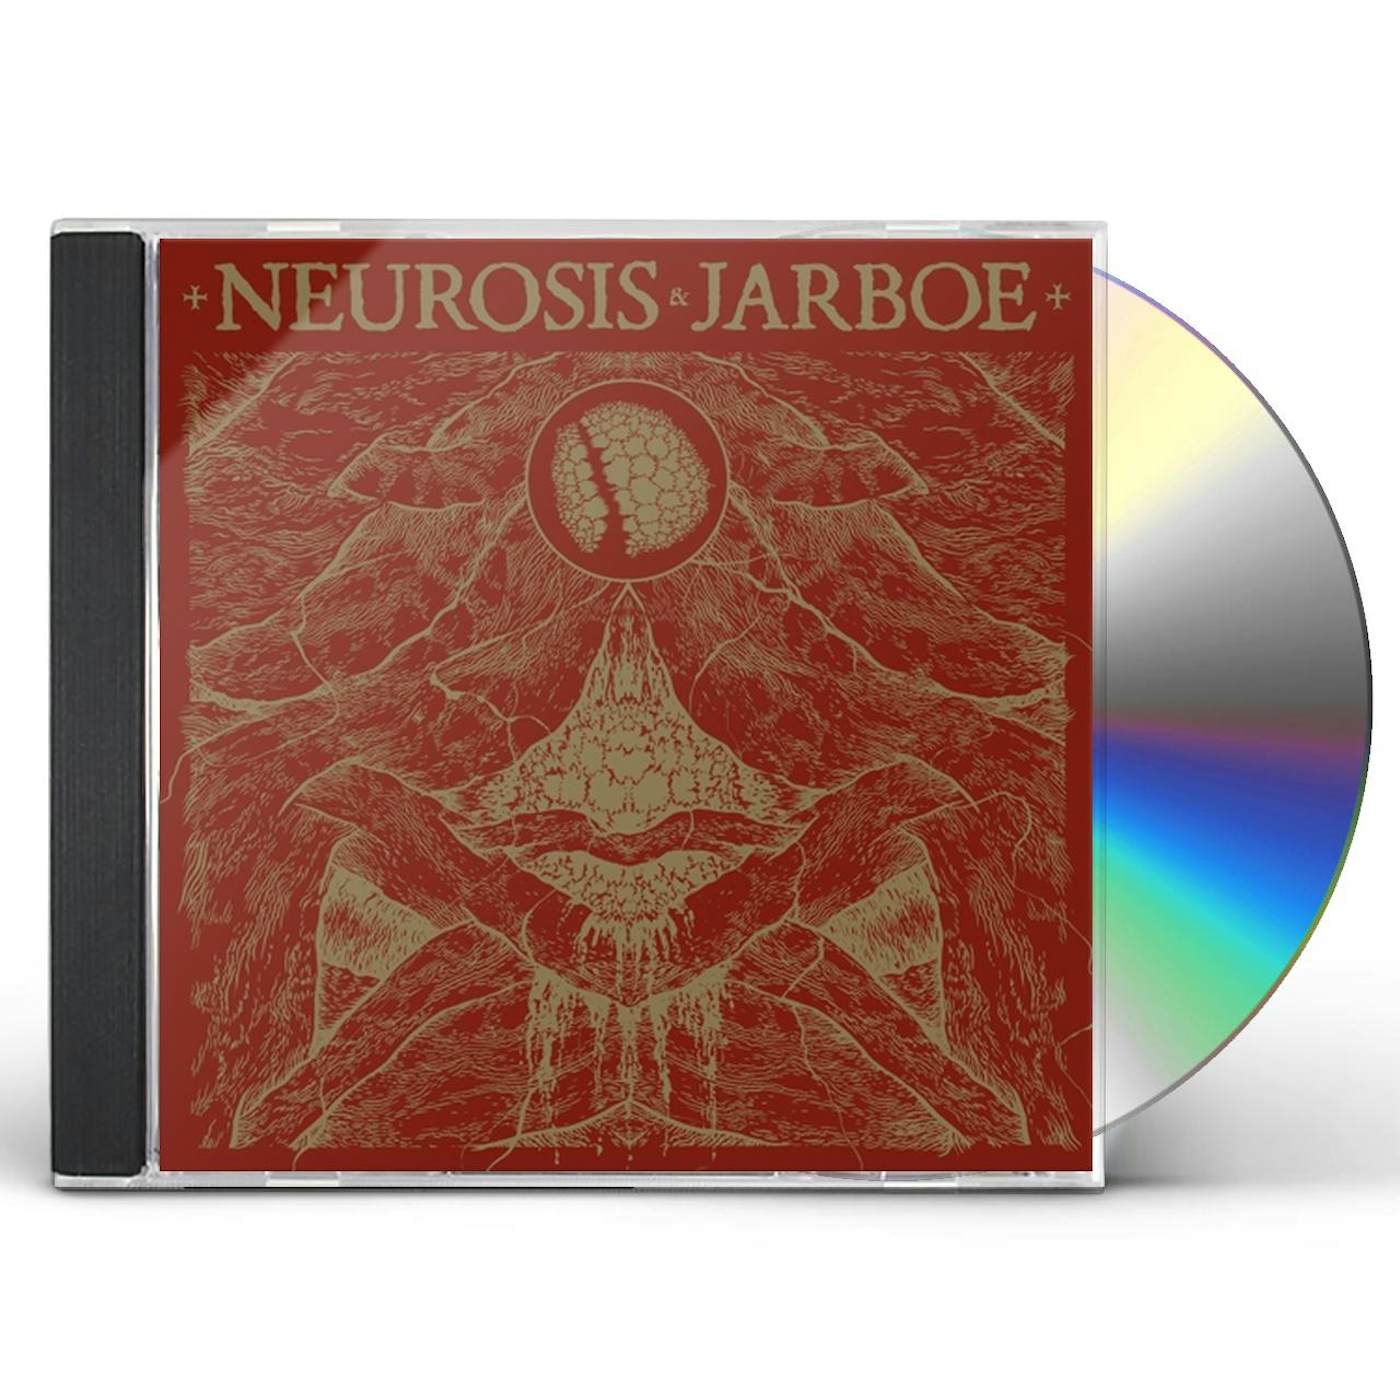 NEUROSIS & JARBOE REISSUE CD